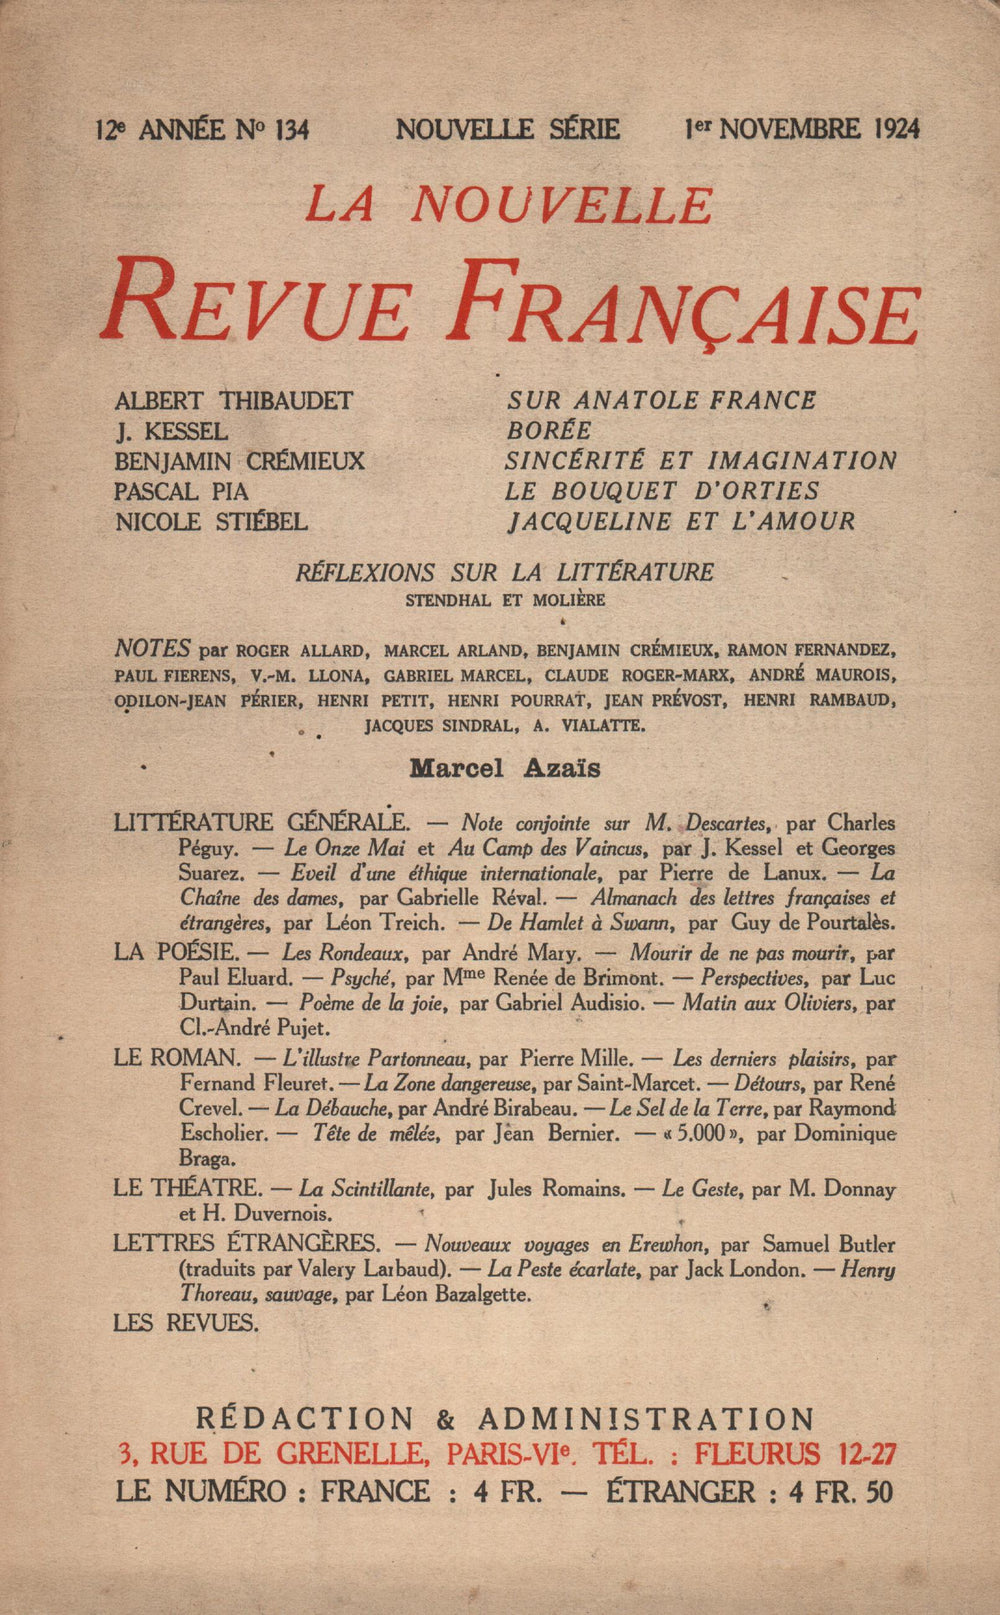 La Nouvelle Revue Française N' 134 (Novembre 1924)